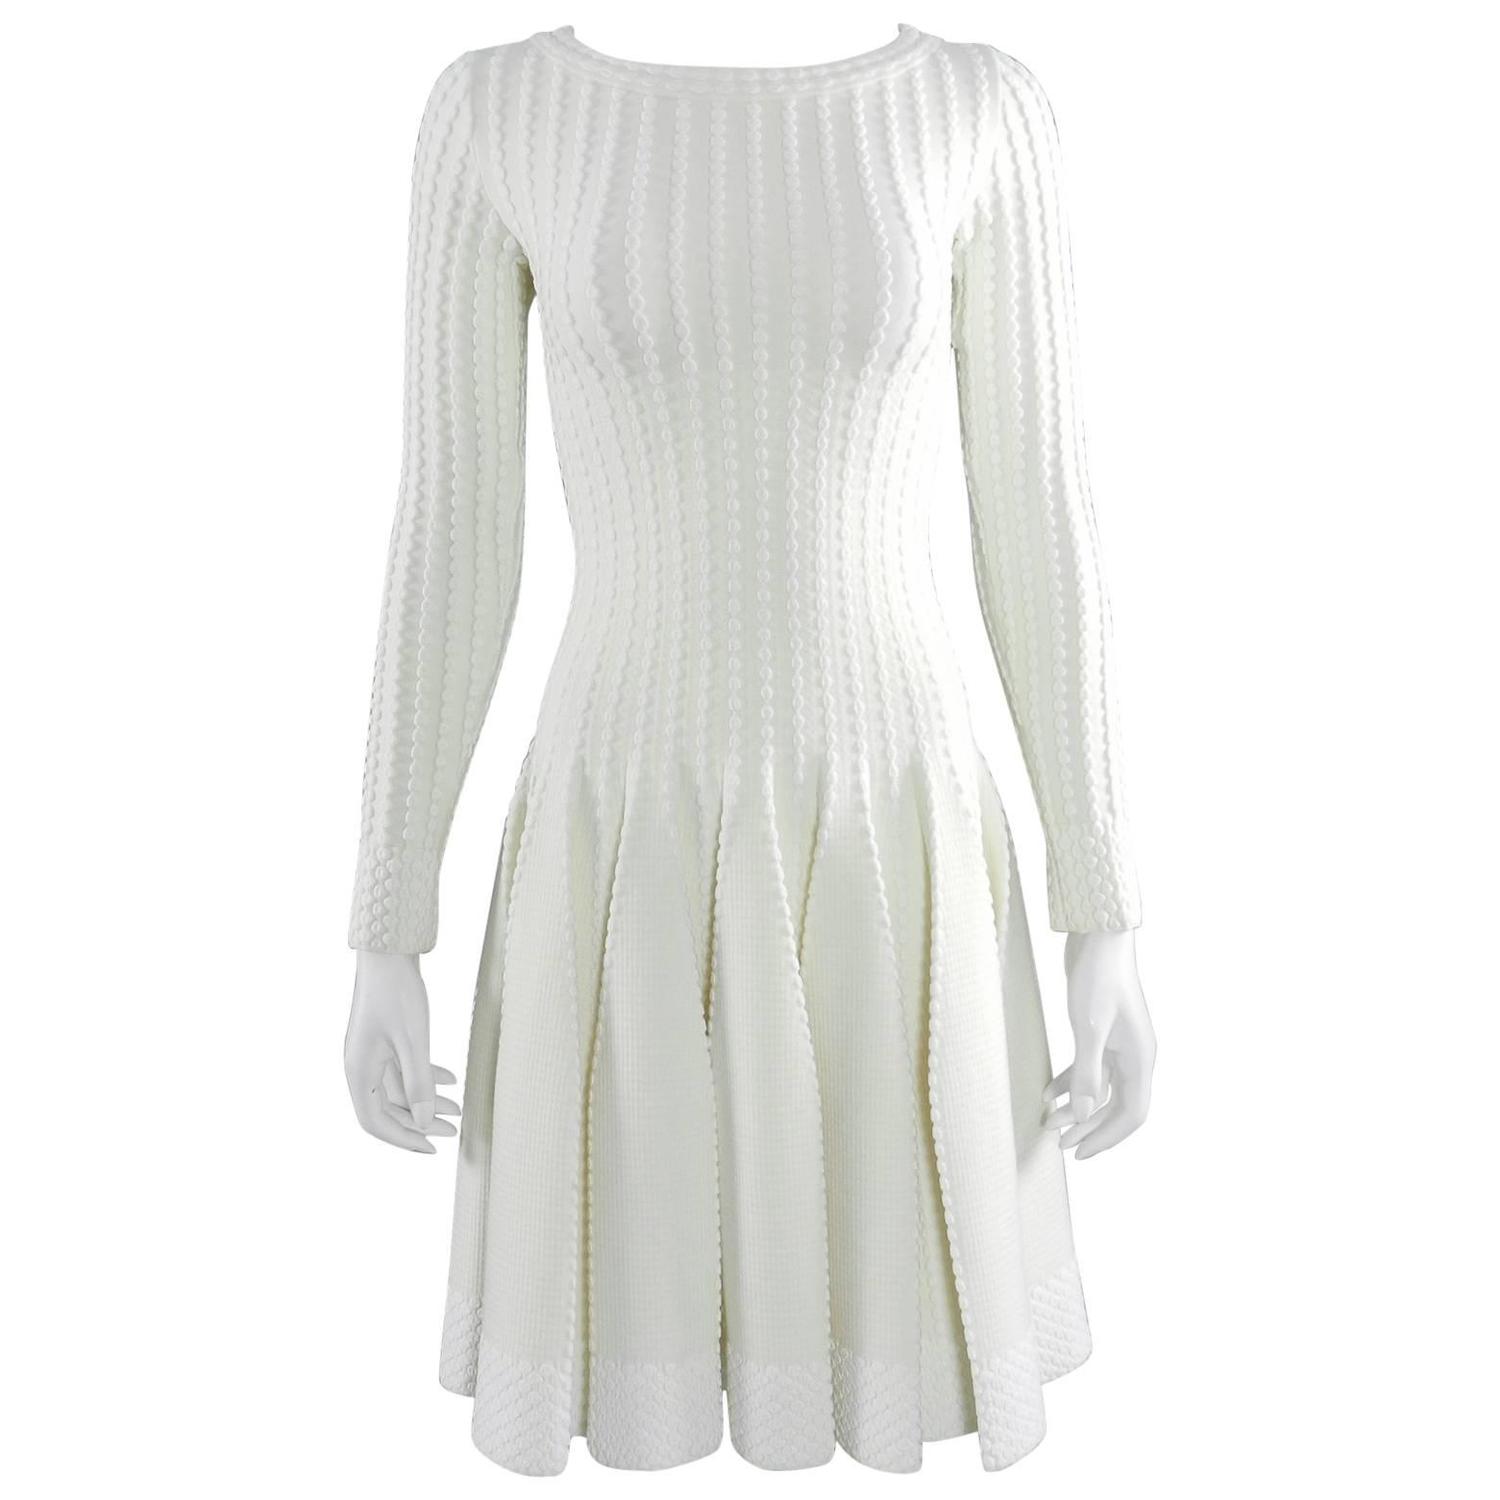 Long sleeve winter white dress